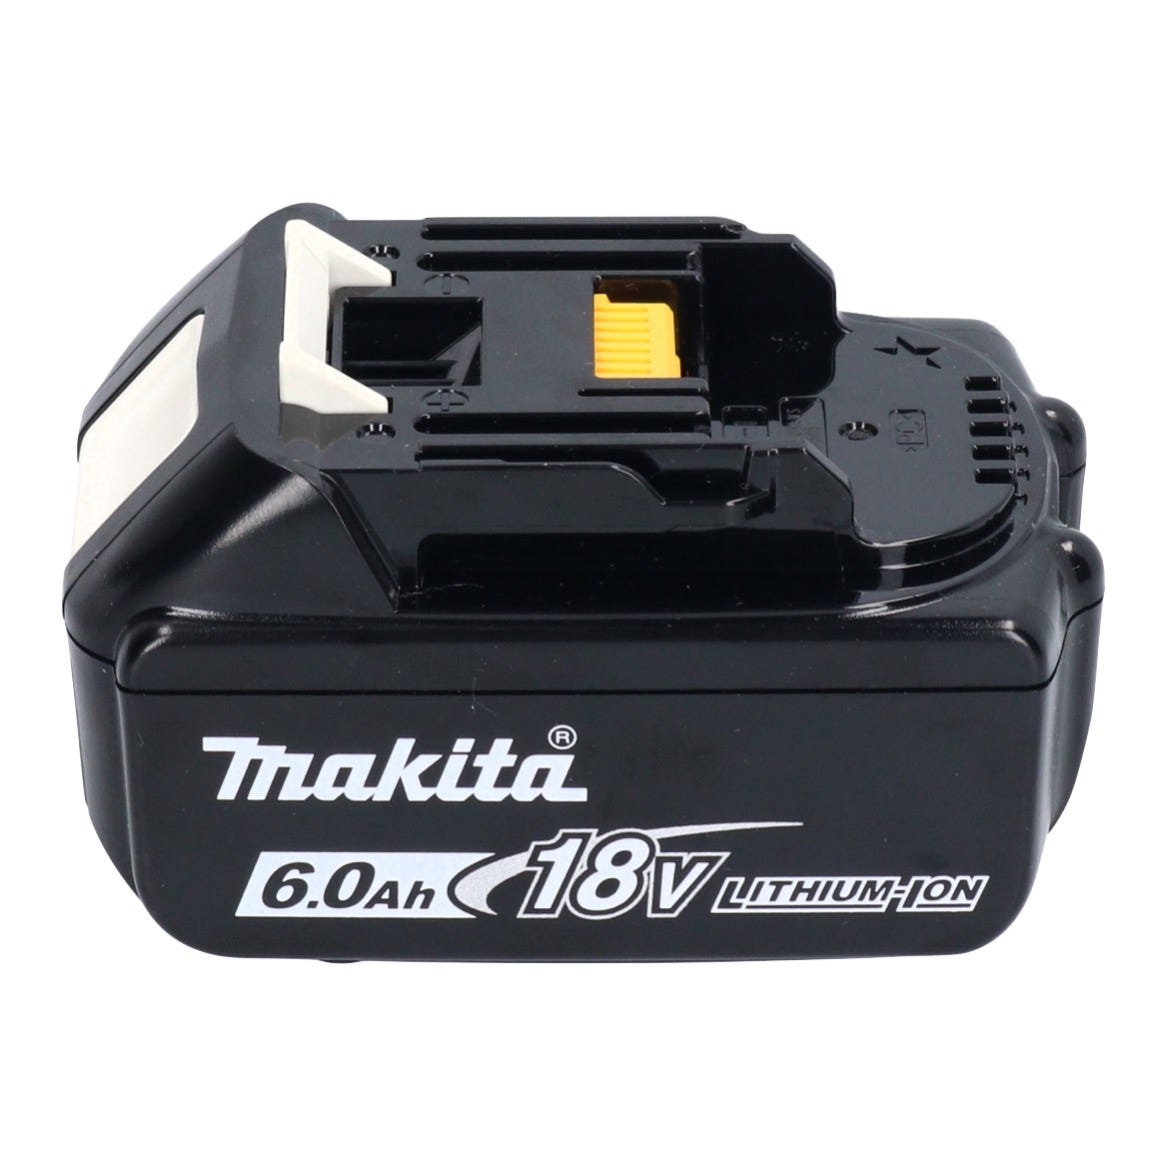 Makita DTD 157 G1 Clé à choc sans fil 18 V 140 Nm 1/4'' Brushless + 1x batterie 6,0 Ah - sans chargeur 2